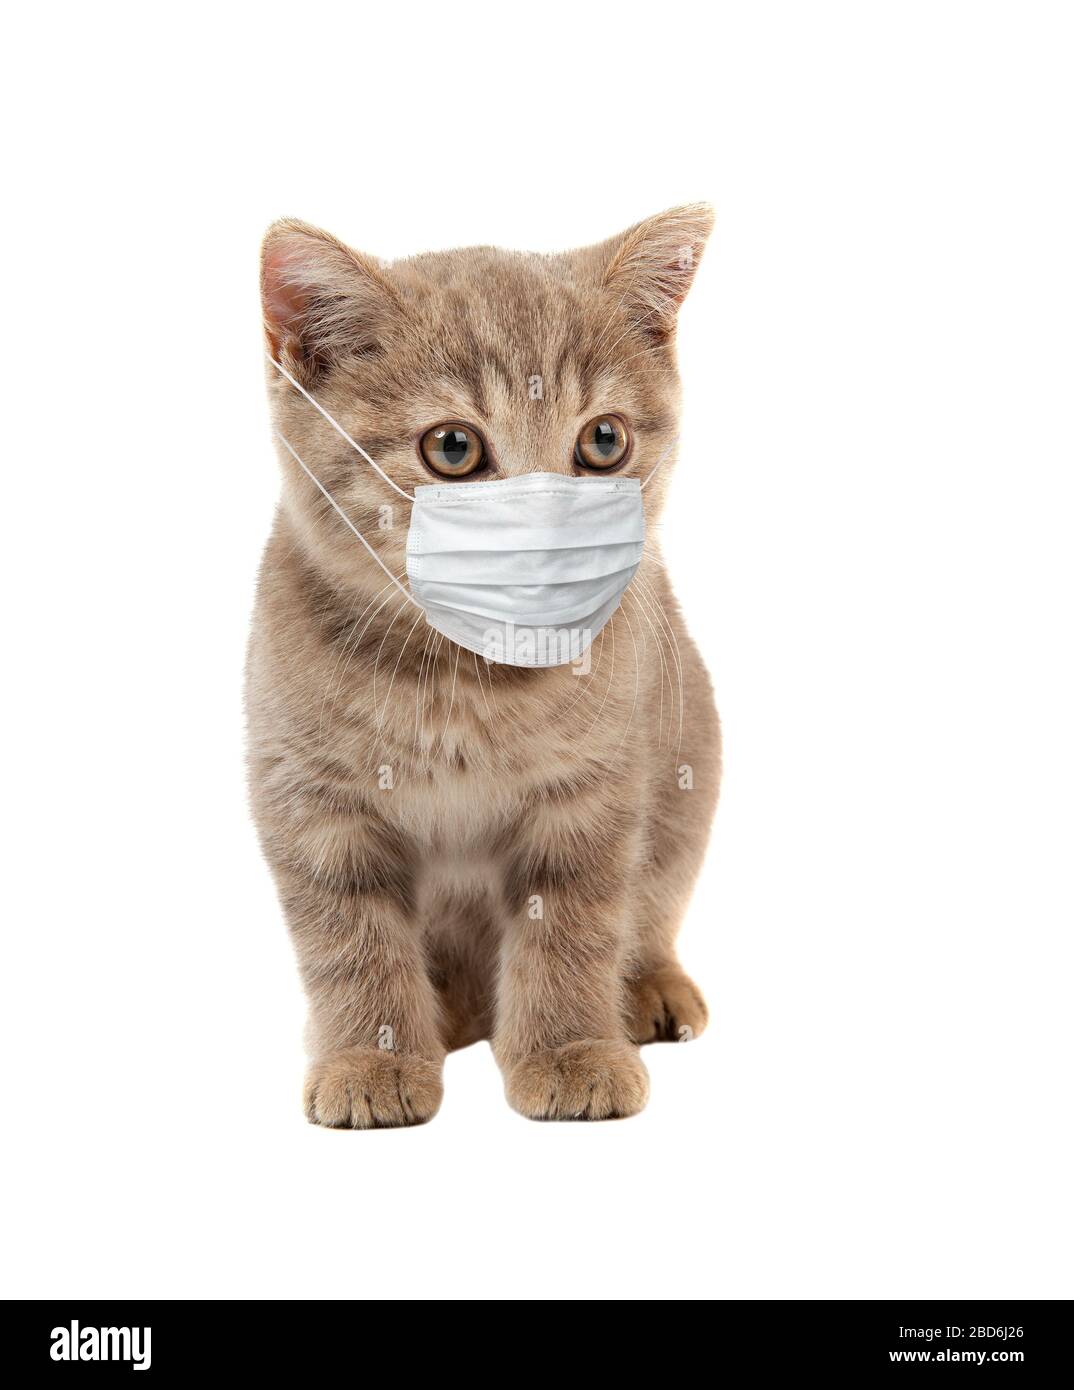 petit chaton dans le masque médical, sur fond blanc, isolé. Concept de pandémie de coronavirus covid-19 Banque D'Images